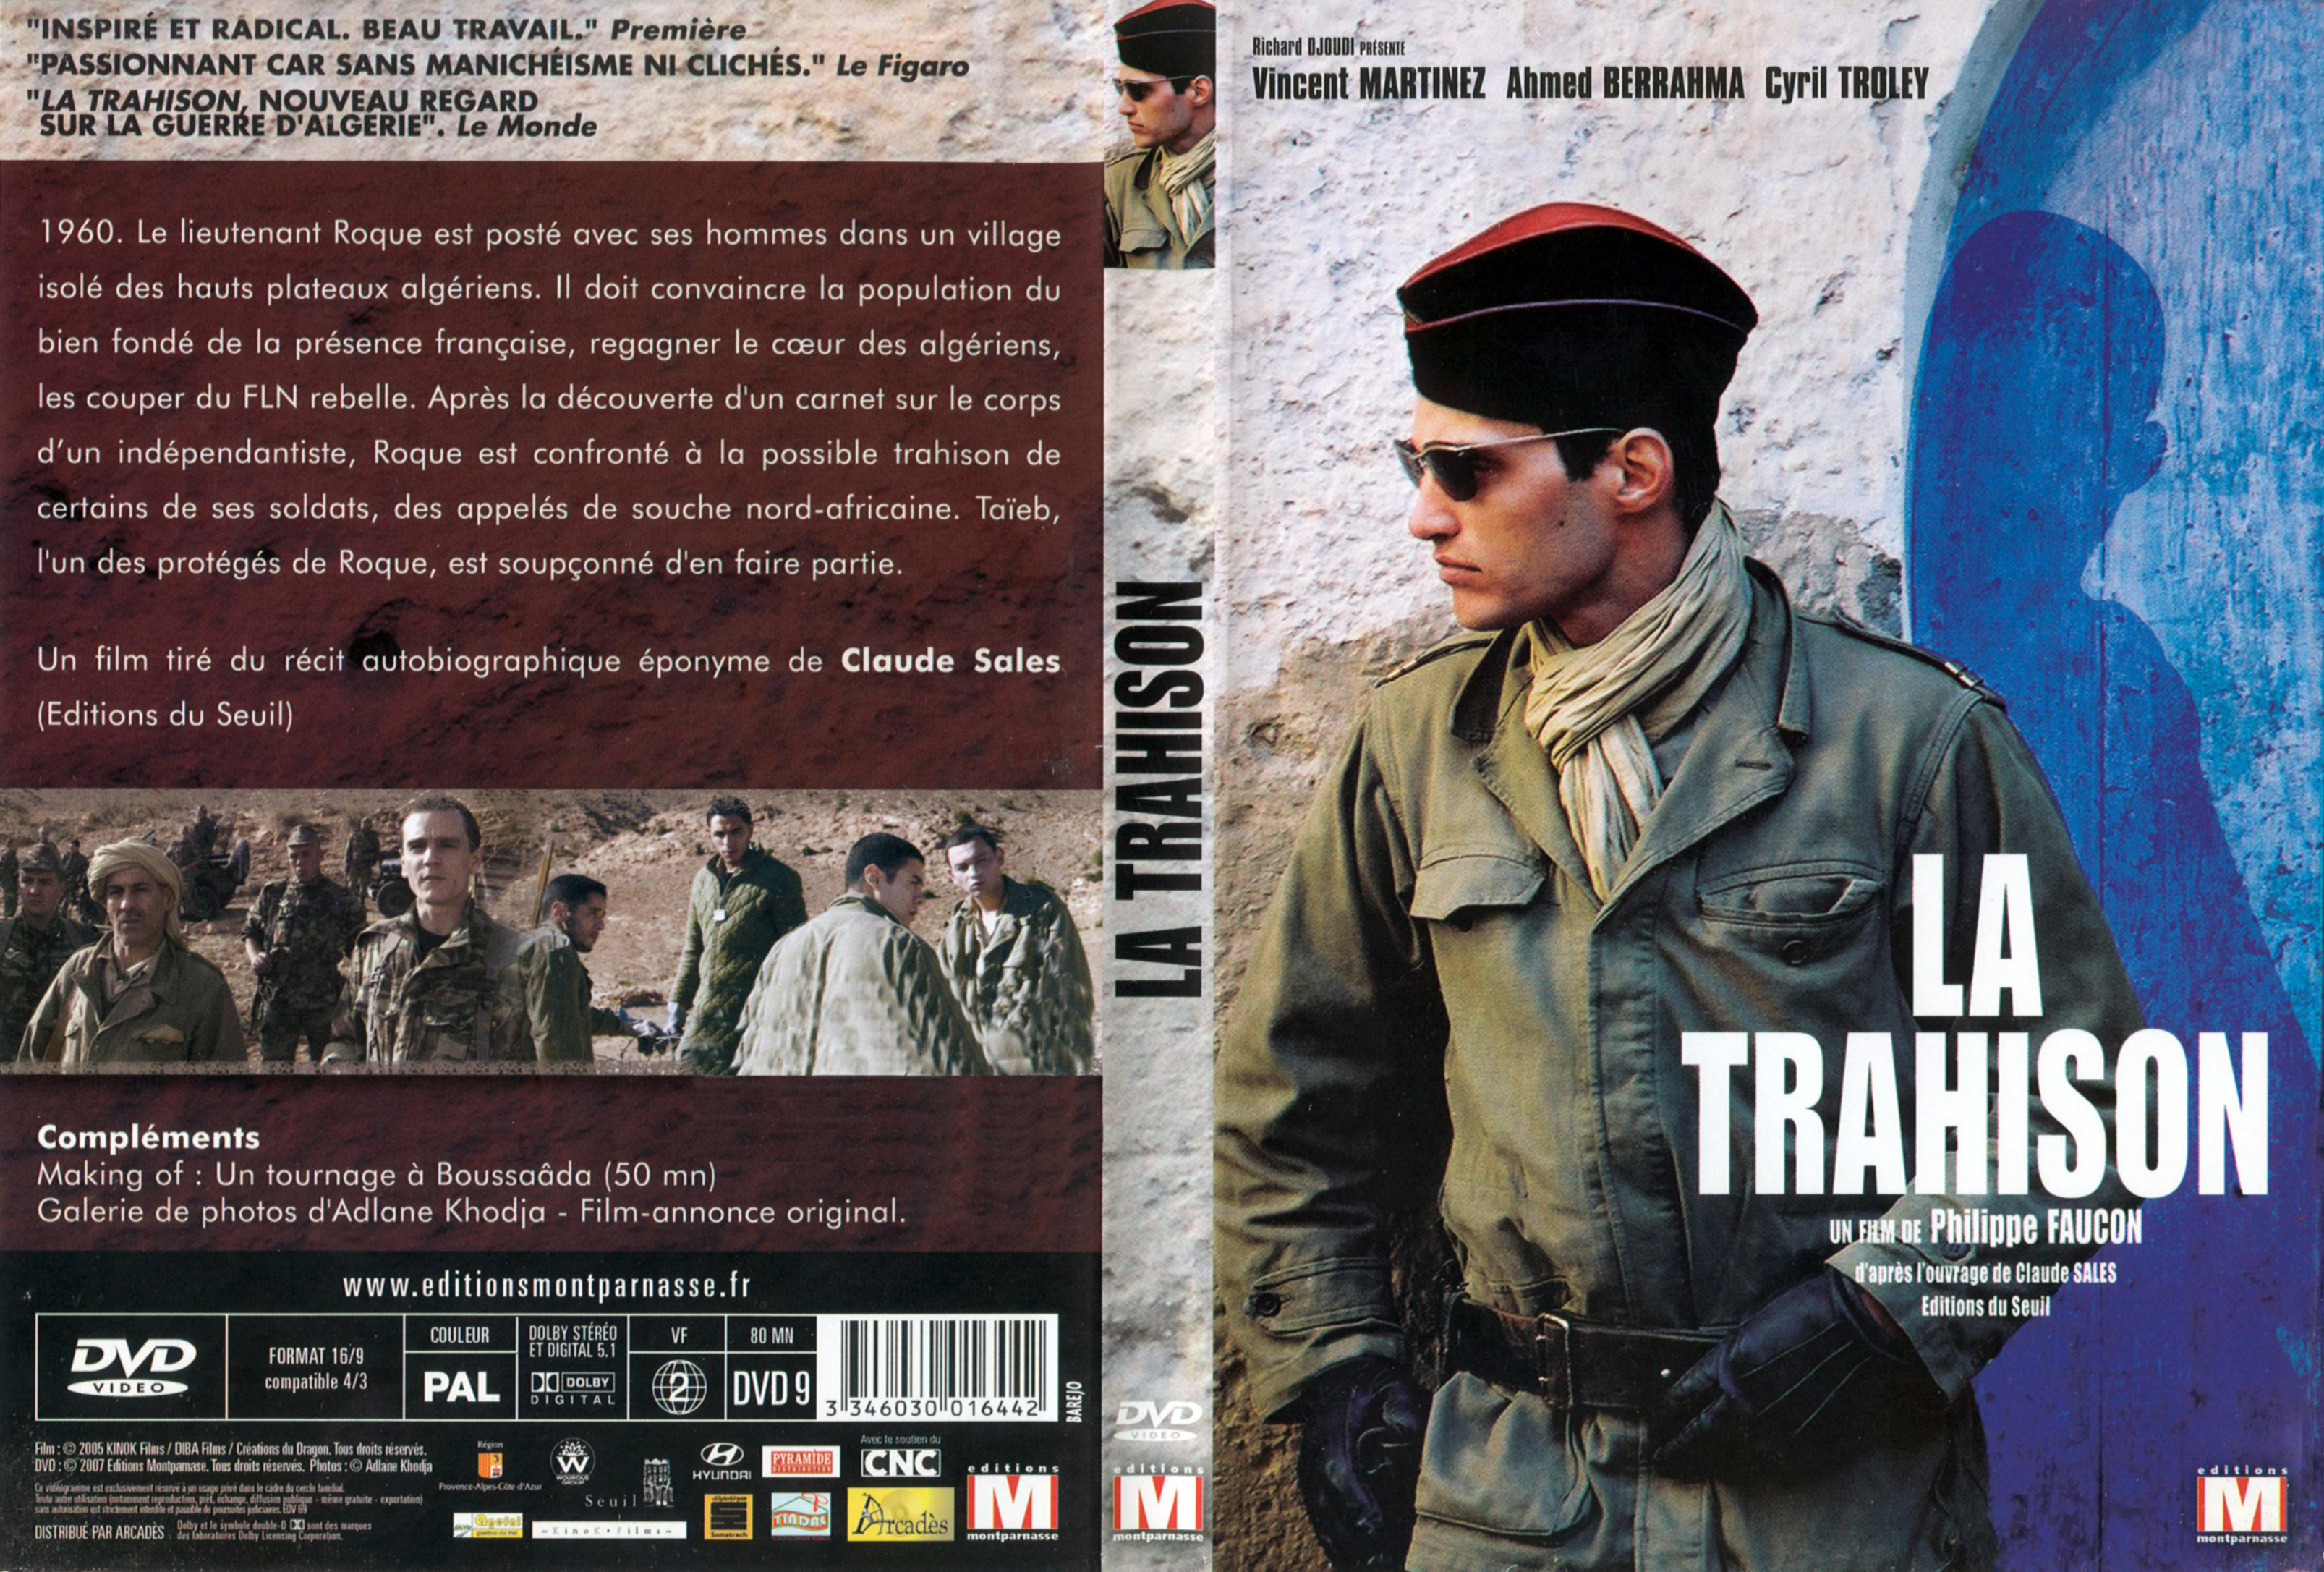 Jaquette DVD La trahison (2005)